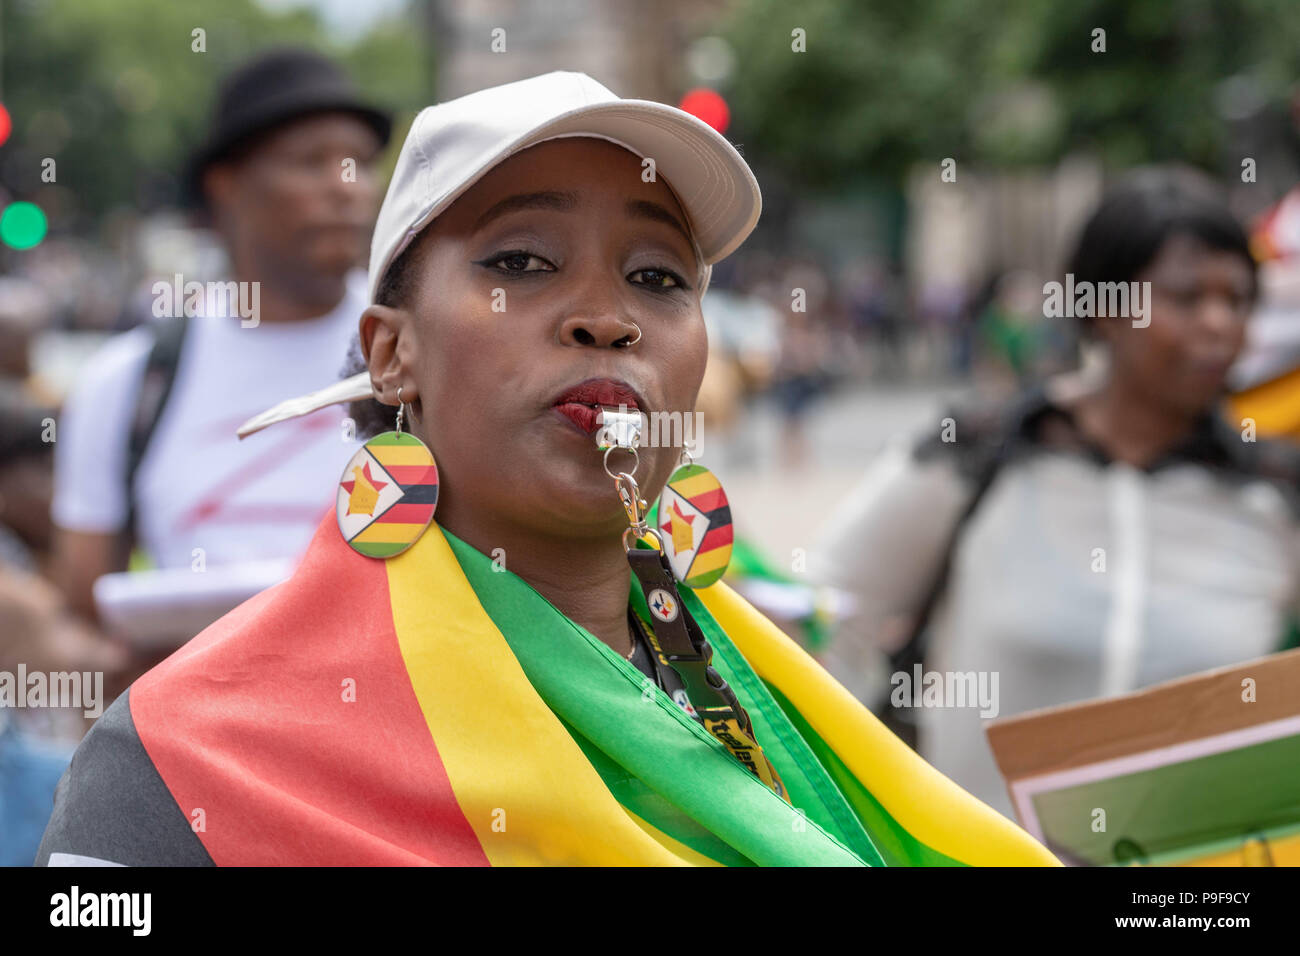 London vom 18. Juli 2018 UK Simbabwer Protest außerhalb des House of Commons gegen Zwangsdeportationen in Simbabwe von illegalen Einwanderern Credit Ian DavidsonAlamy leben Nachrichten Stockfoto